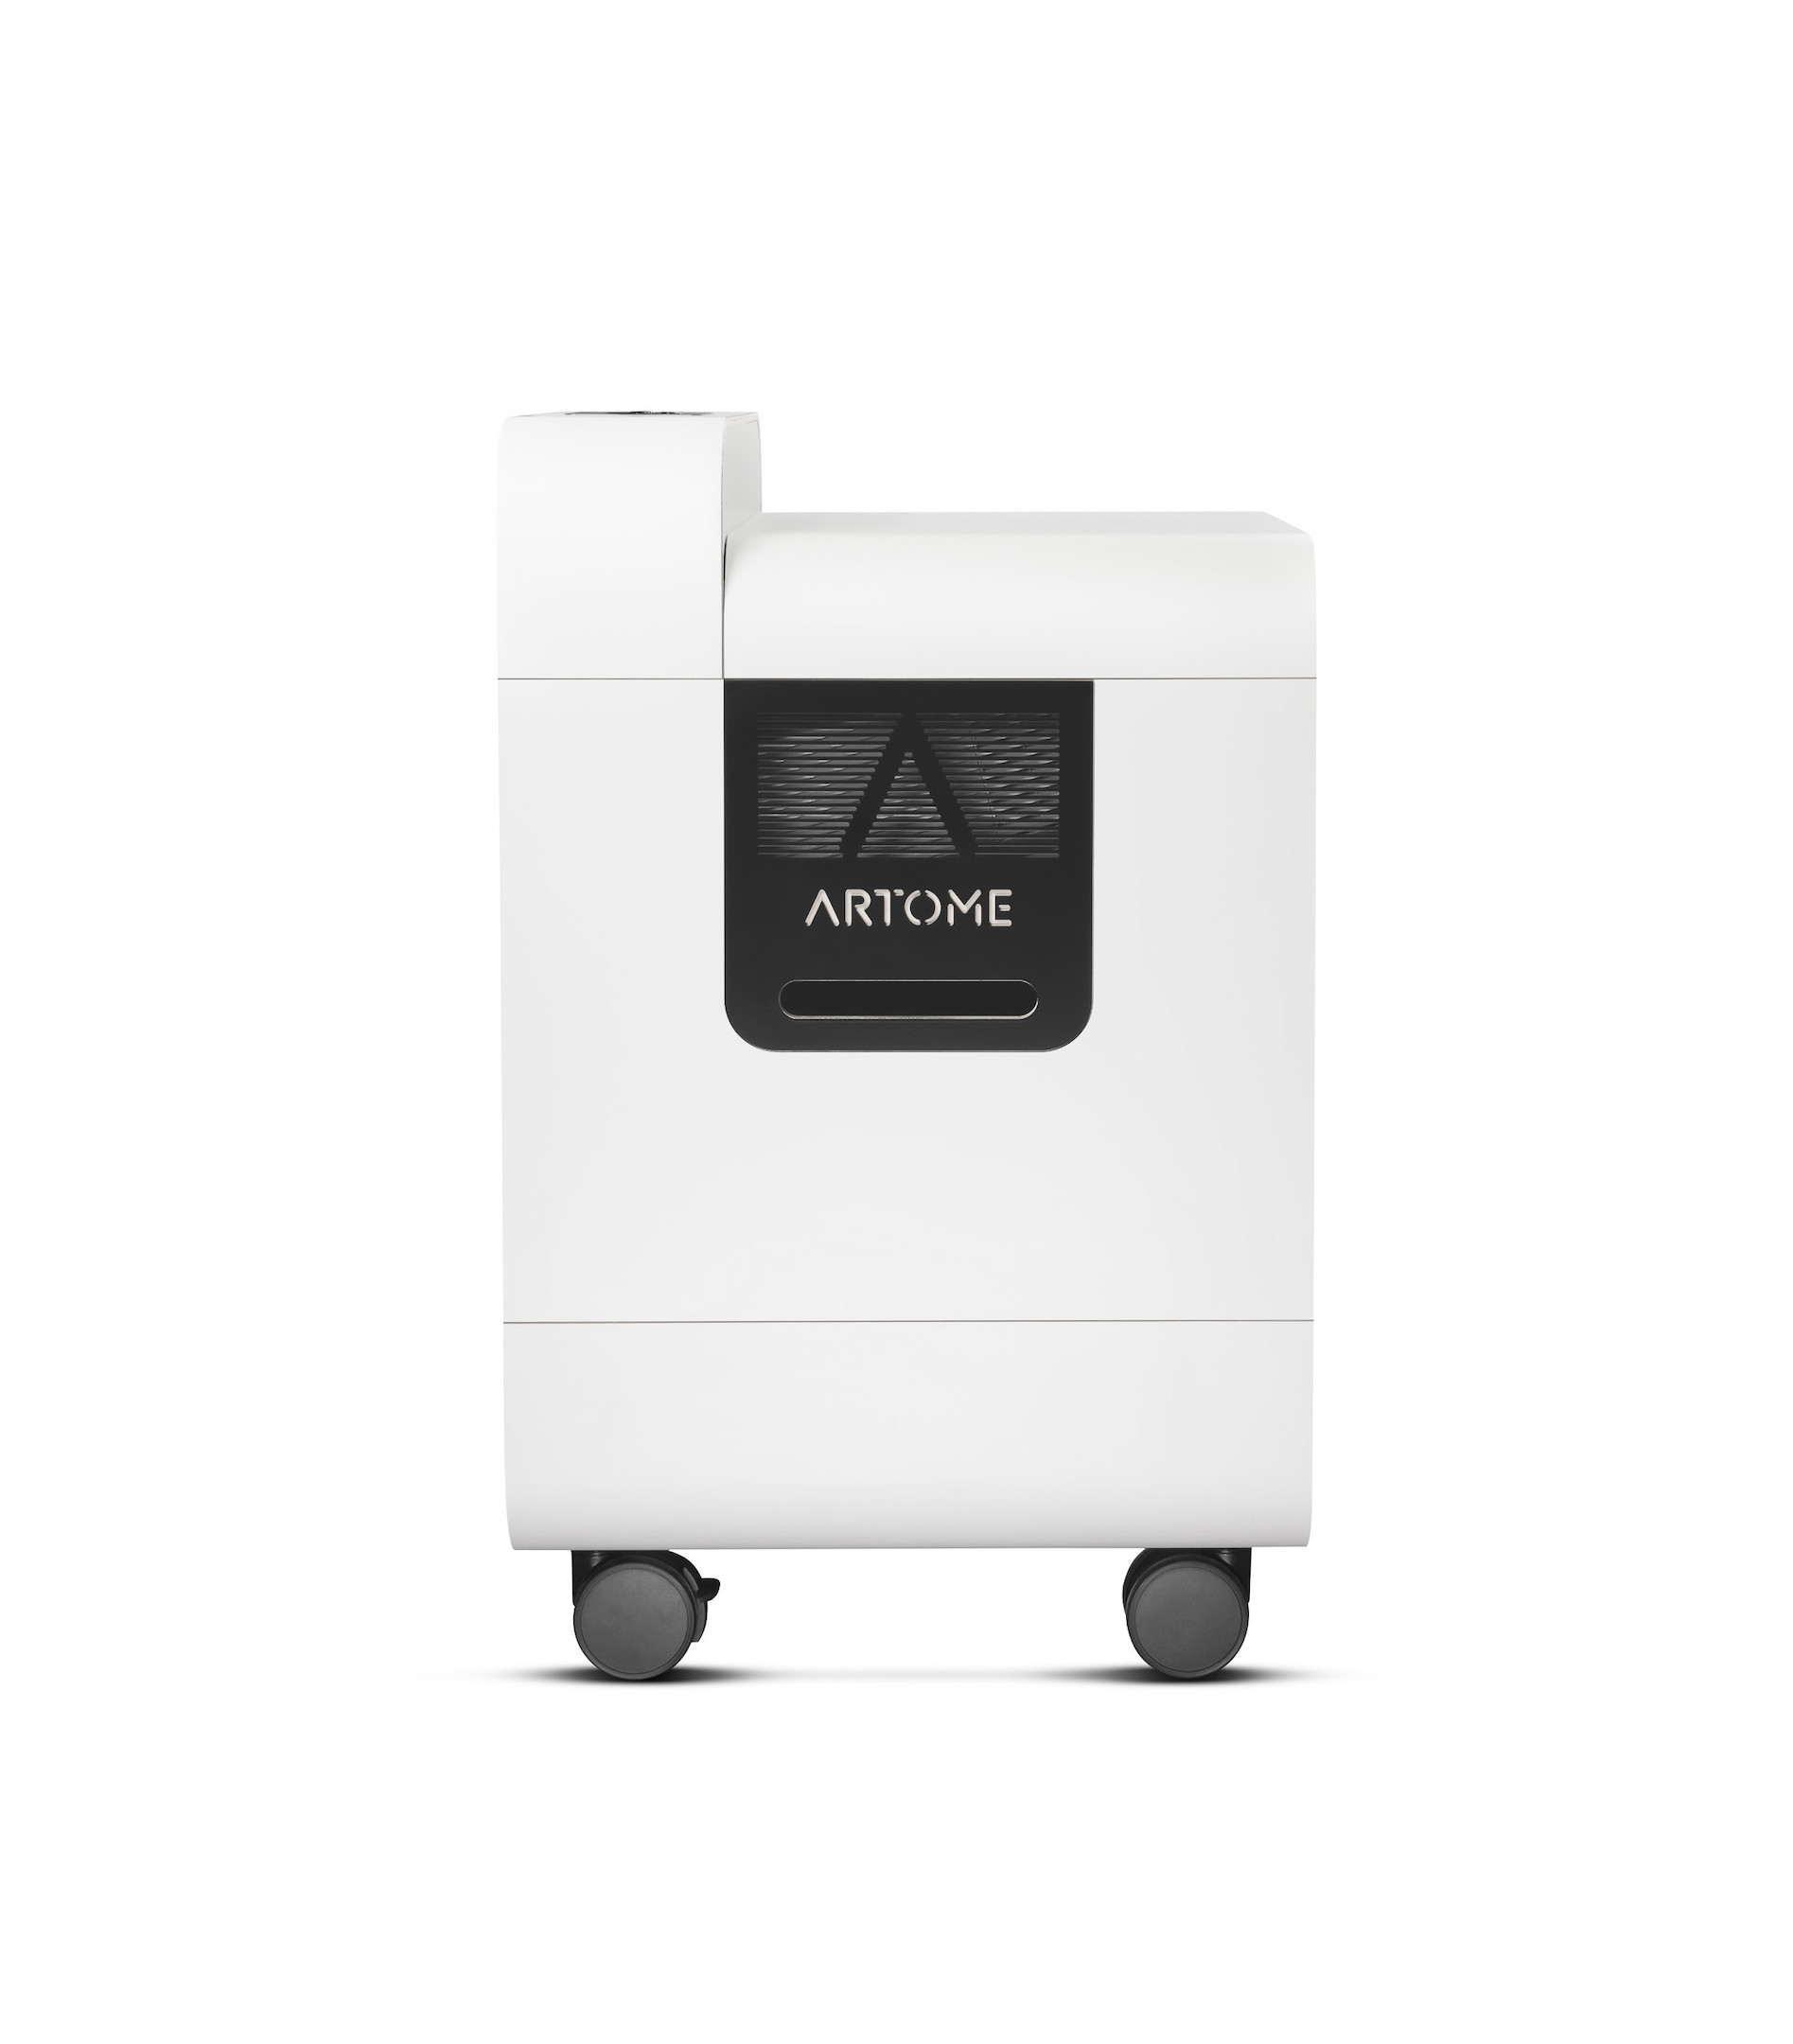 Artome-X20-alles-in-een-oplossing-met-Epson-EB-PU1008-projector-voor-feestzalen-en-evenementen